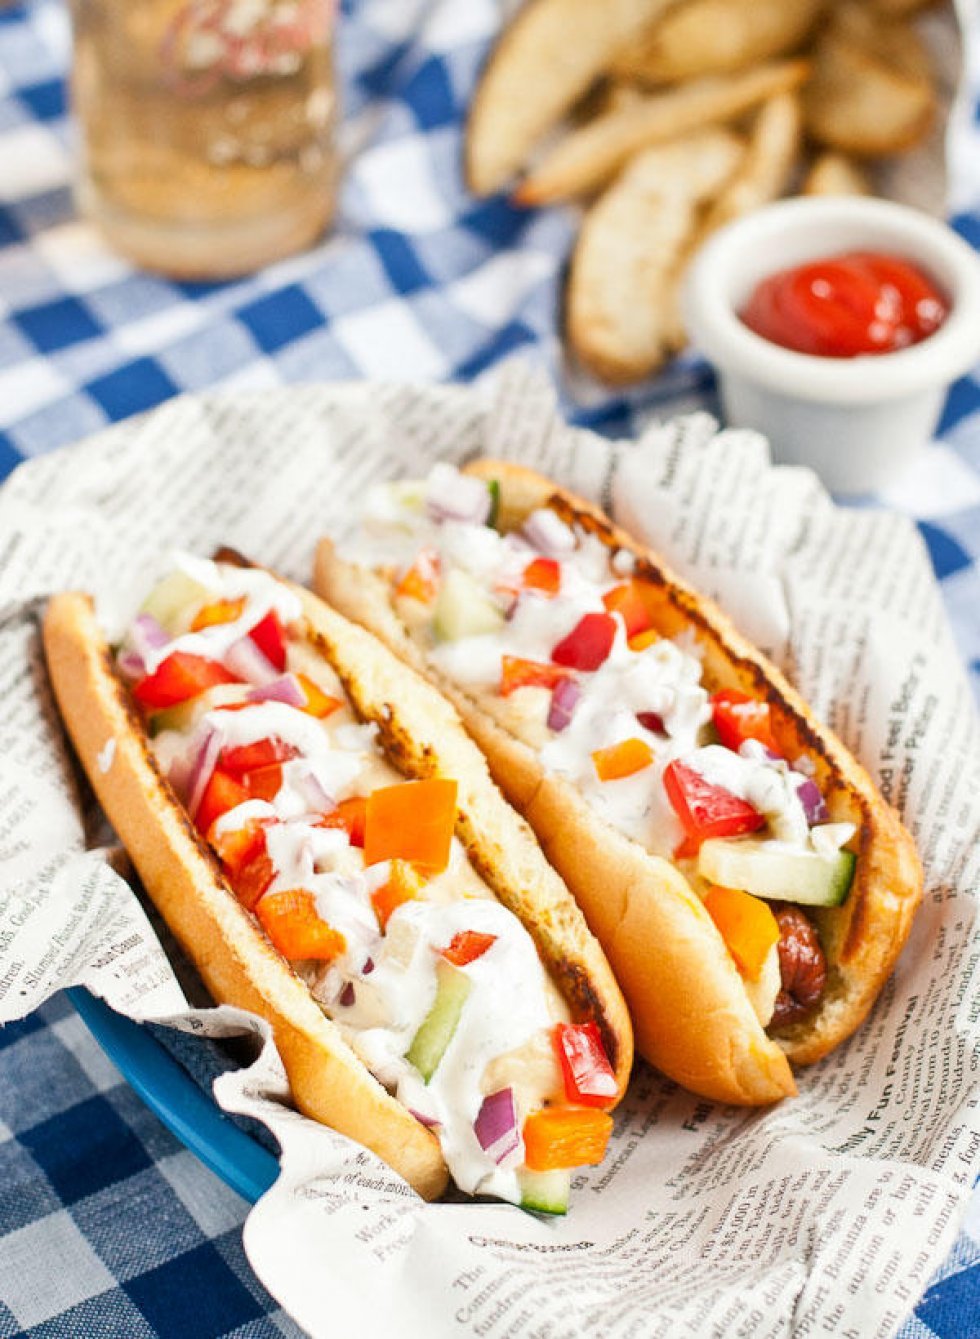 http://neighborfoodblog.com/2015/05/greek-hot-dogs.html - 10 toppings, der vil gøre det sjovere at grille hotdogs denne sommer 